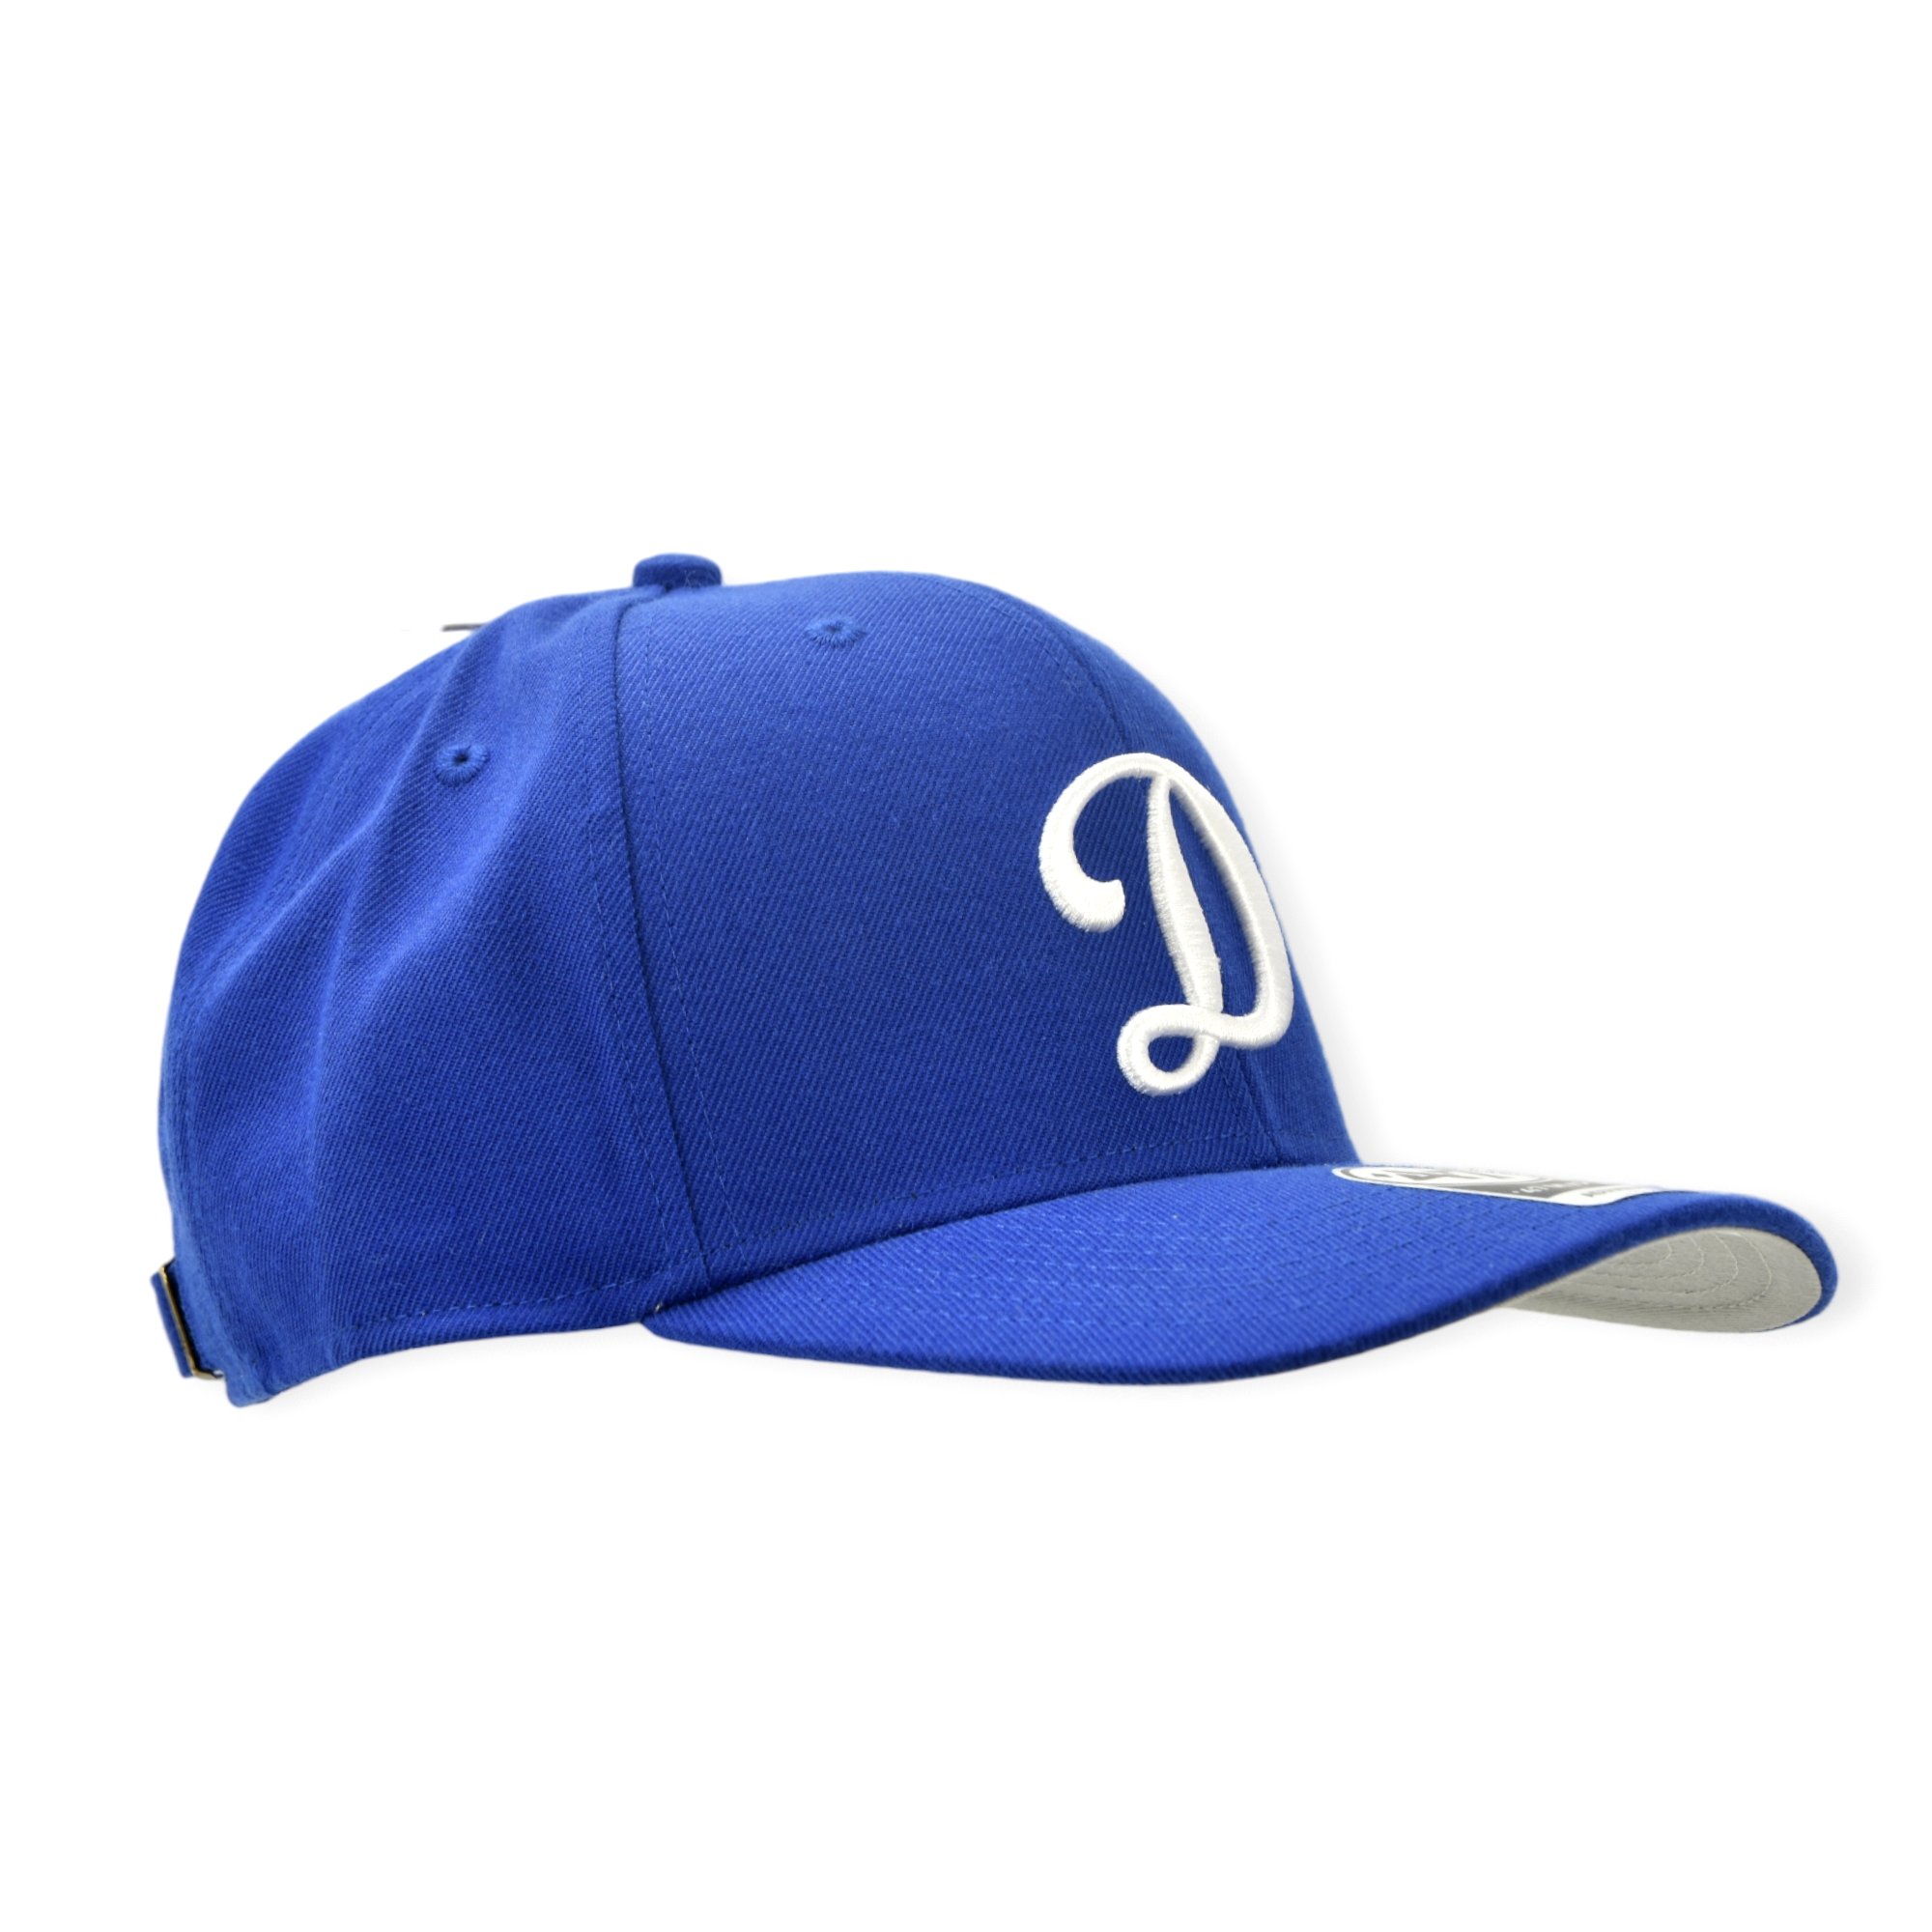 Gorras Los Angeles Dodgers oficiales de béisbol, Dodgers gorras, Dodgers  gorro, gorros